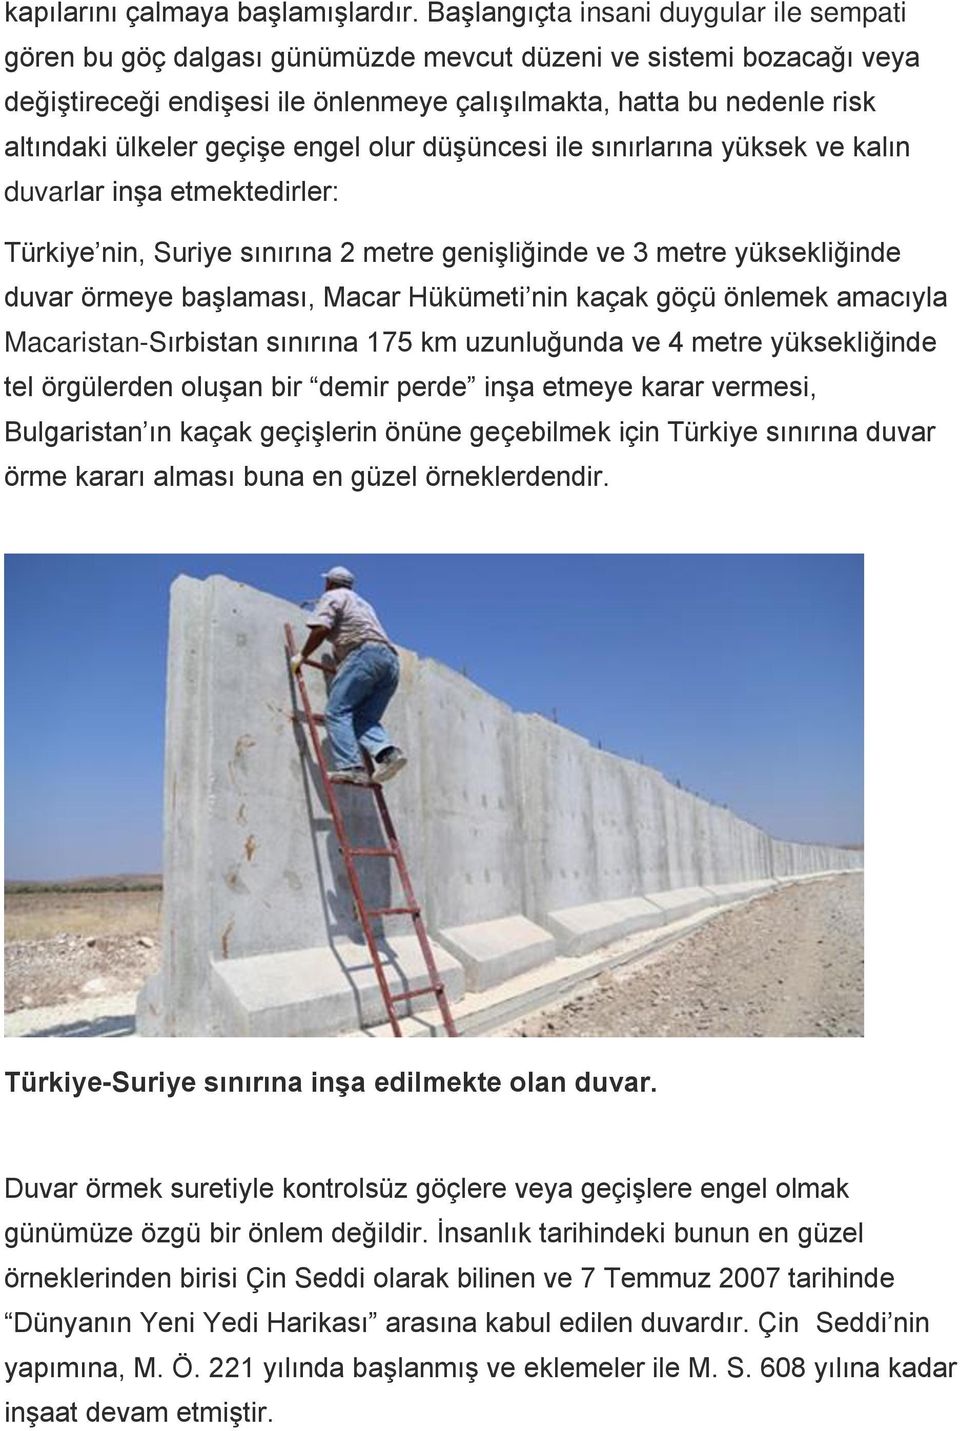 ülkeler geçişe engel olur düşüncesi ile sınırlarına yüksek ve kalın duvarlar inşa etmektedirler: Türkiye nin, Suriye sınırına 2 metre genişliğinde ve 3 metre yüksekliğinde duvar örmeye başlaması,